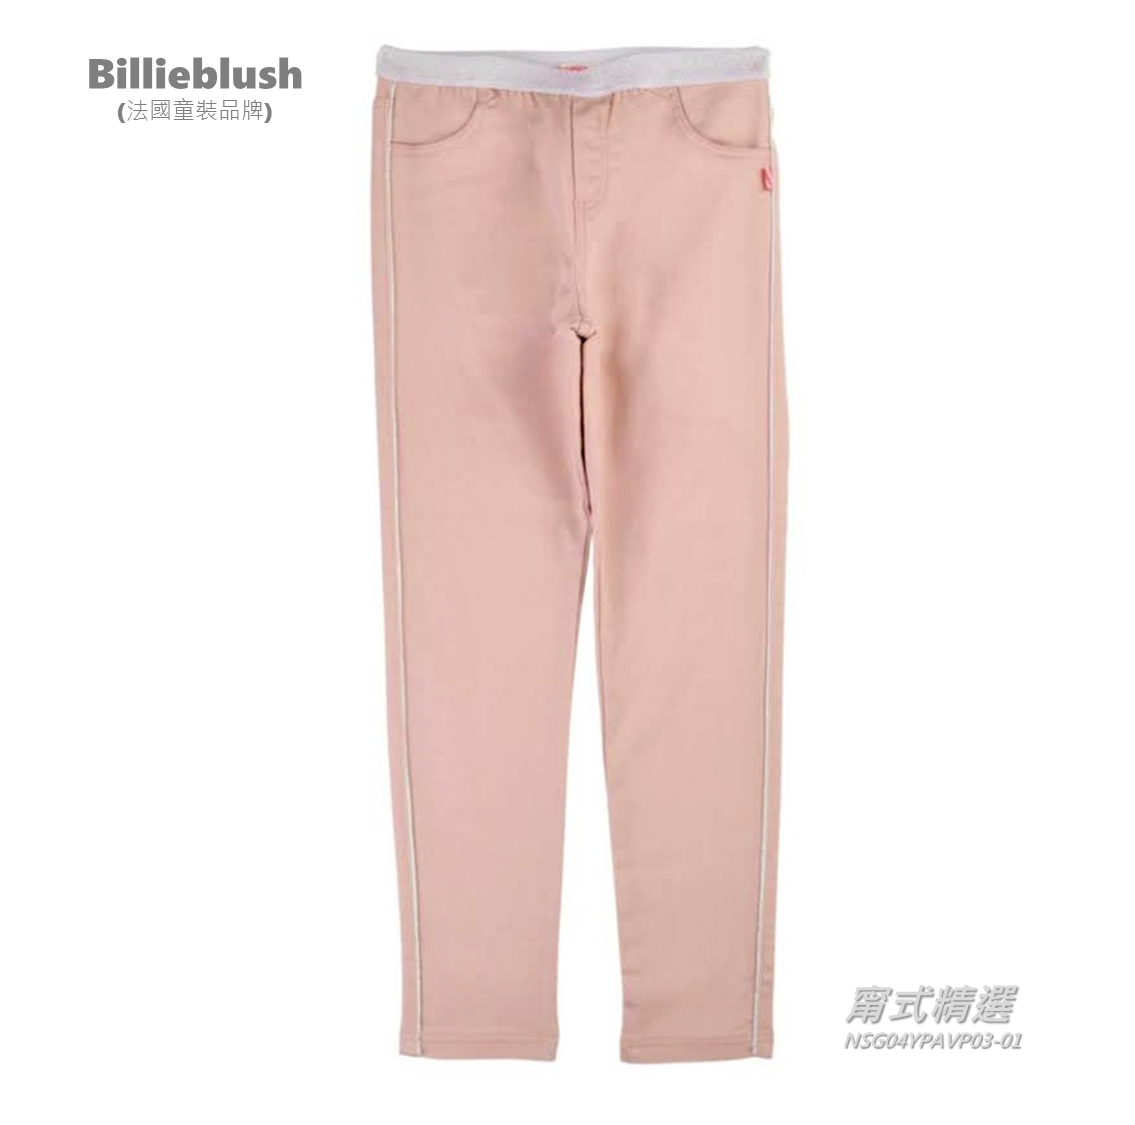 [歐洲進口] Billieblush, 女童長褲, 精緻質感彈性好搭, 身高102公分, 現貨唯一